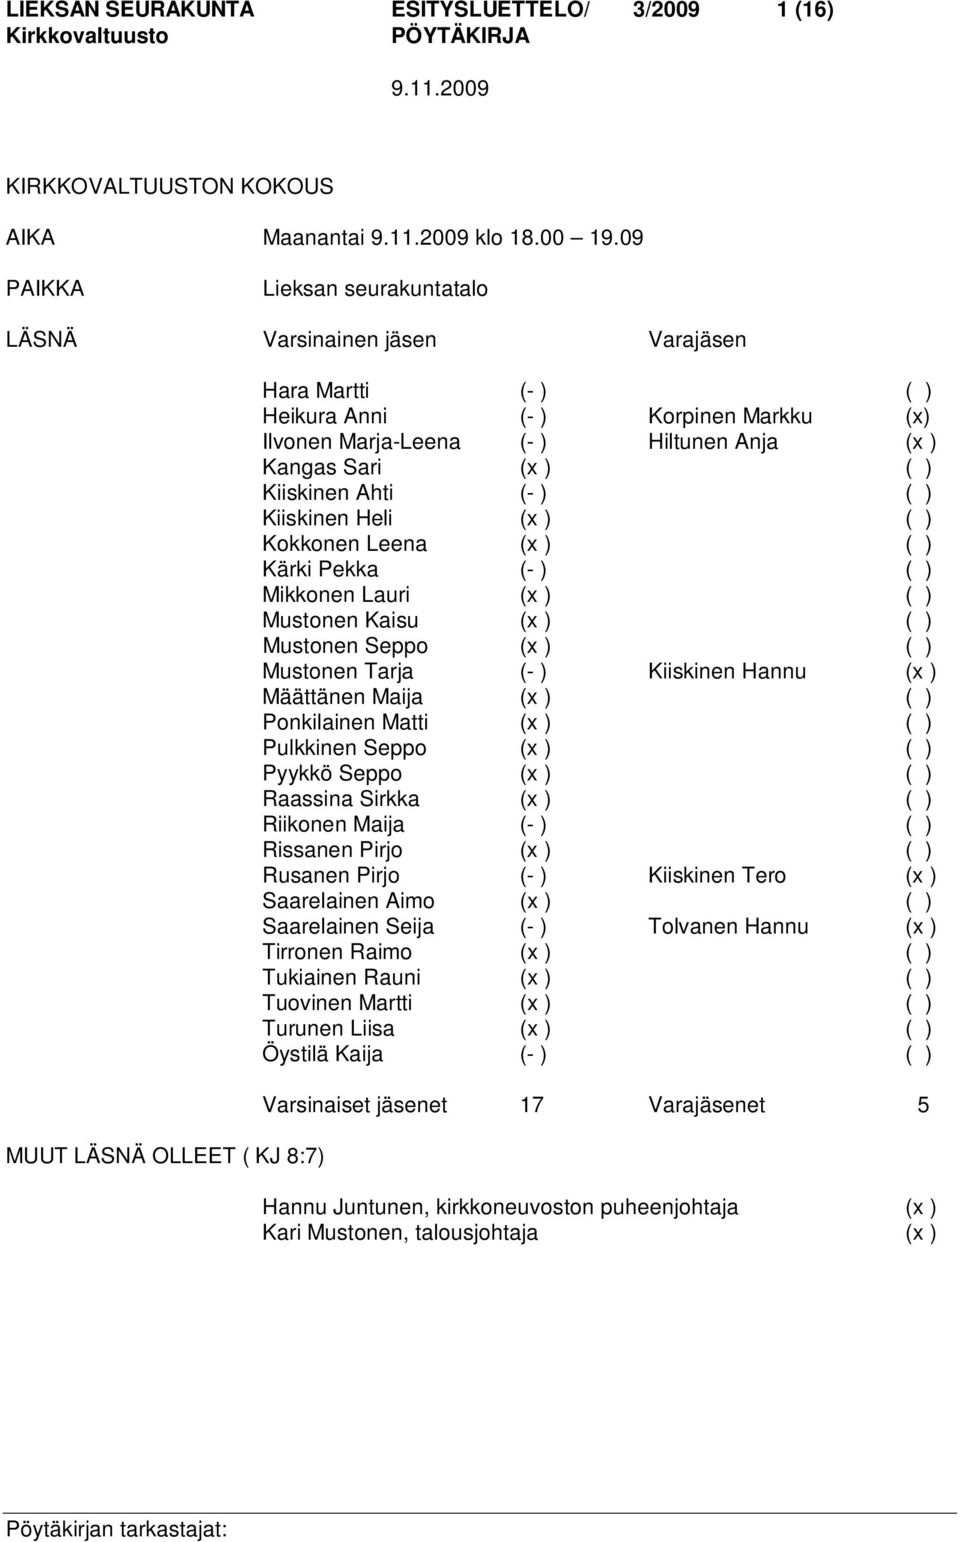 Kangas Sari (x ) ( ) Kiiskinen Ahti (- ) ( ) Kiiskinen Heli (x ) ( ) Kokkonen Leena (x ) ( ) Kärki Pekka (- ) ( ) Mikkonen Lauri (x ) ( ) Mustonen Kaisu (x ) ( ) Mustonen Seppo (x ) ( ) Mustonen